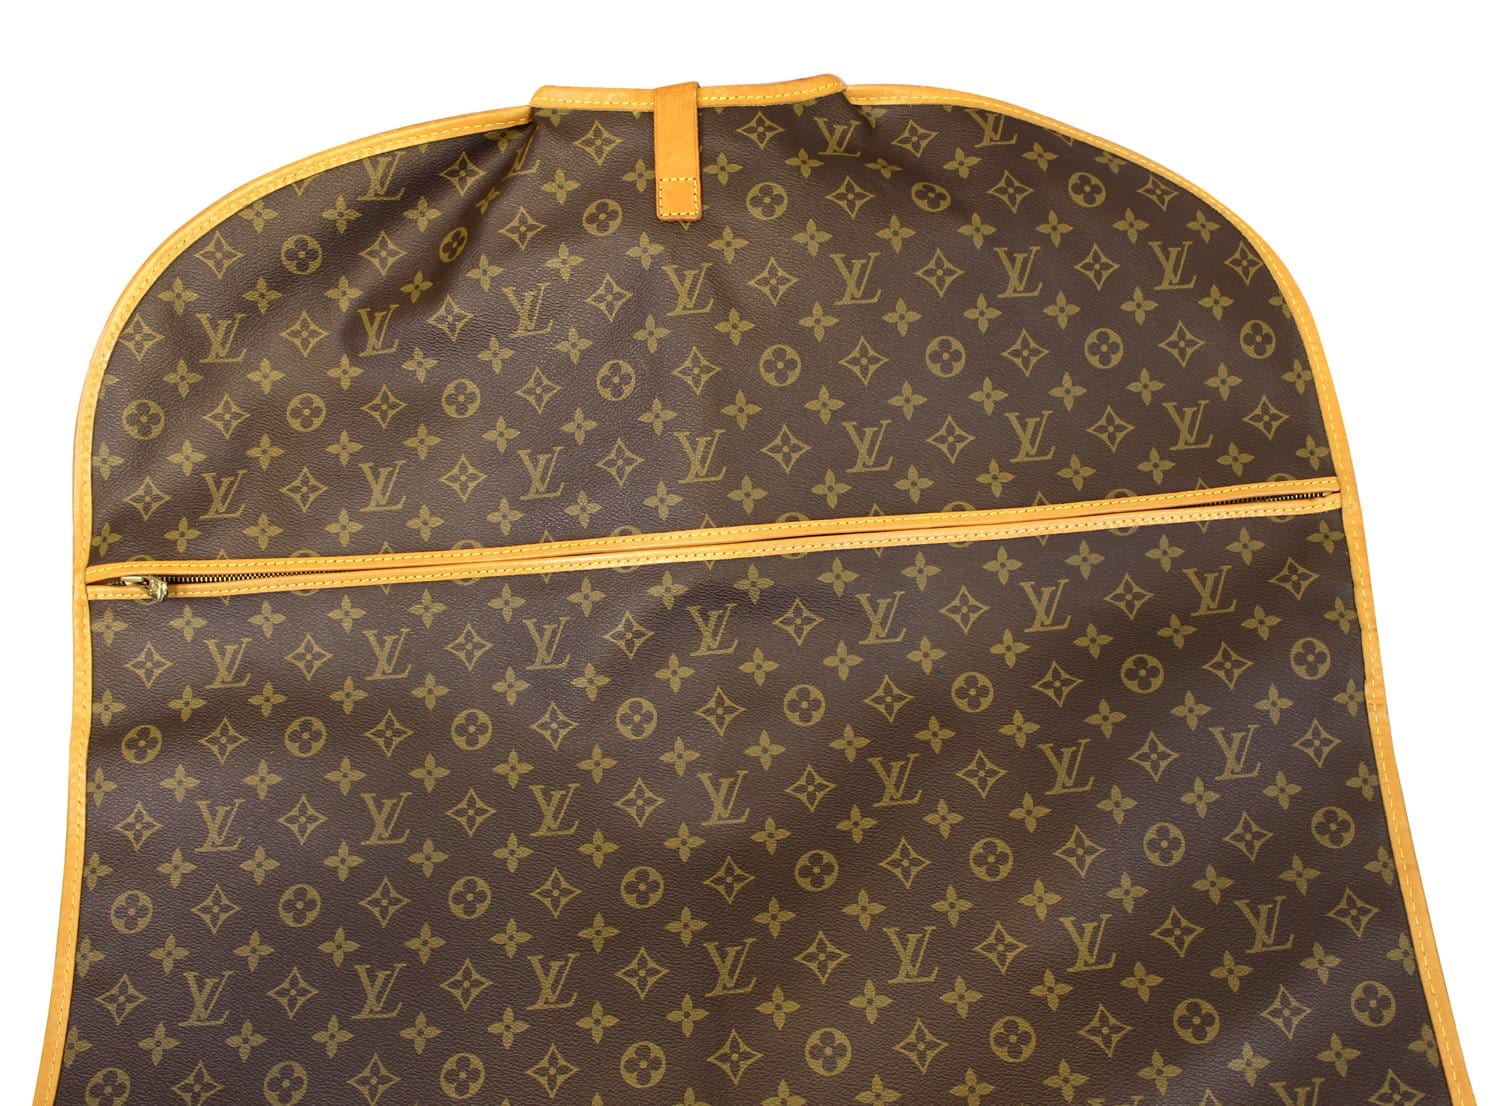 Sold at Auction: Louis Vuitton, Vintage Louis Vuitton Monogram Garment Cover